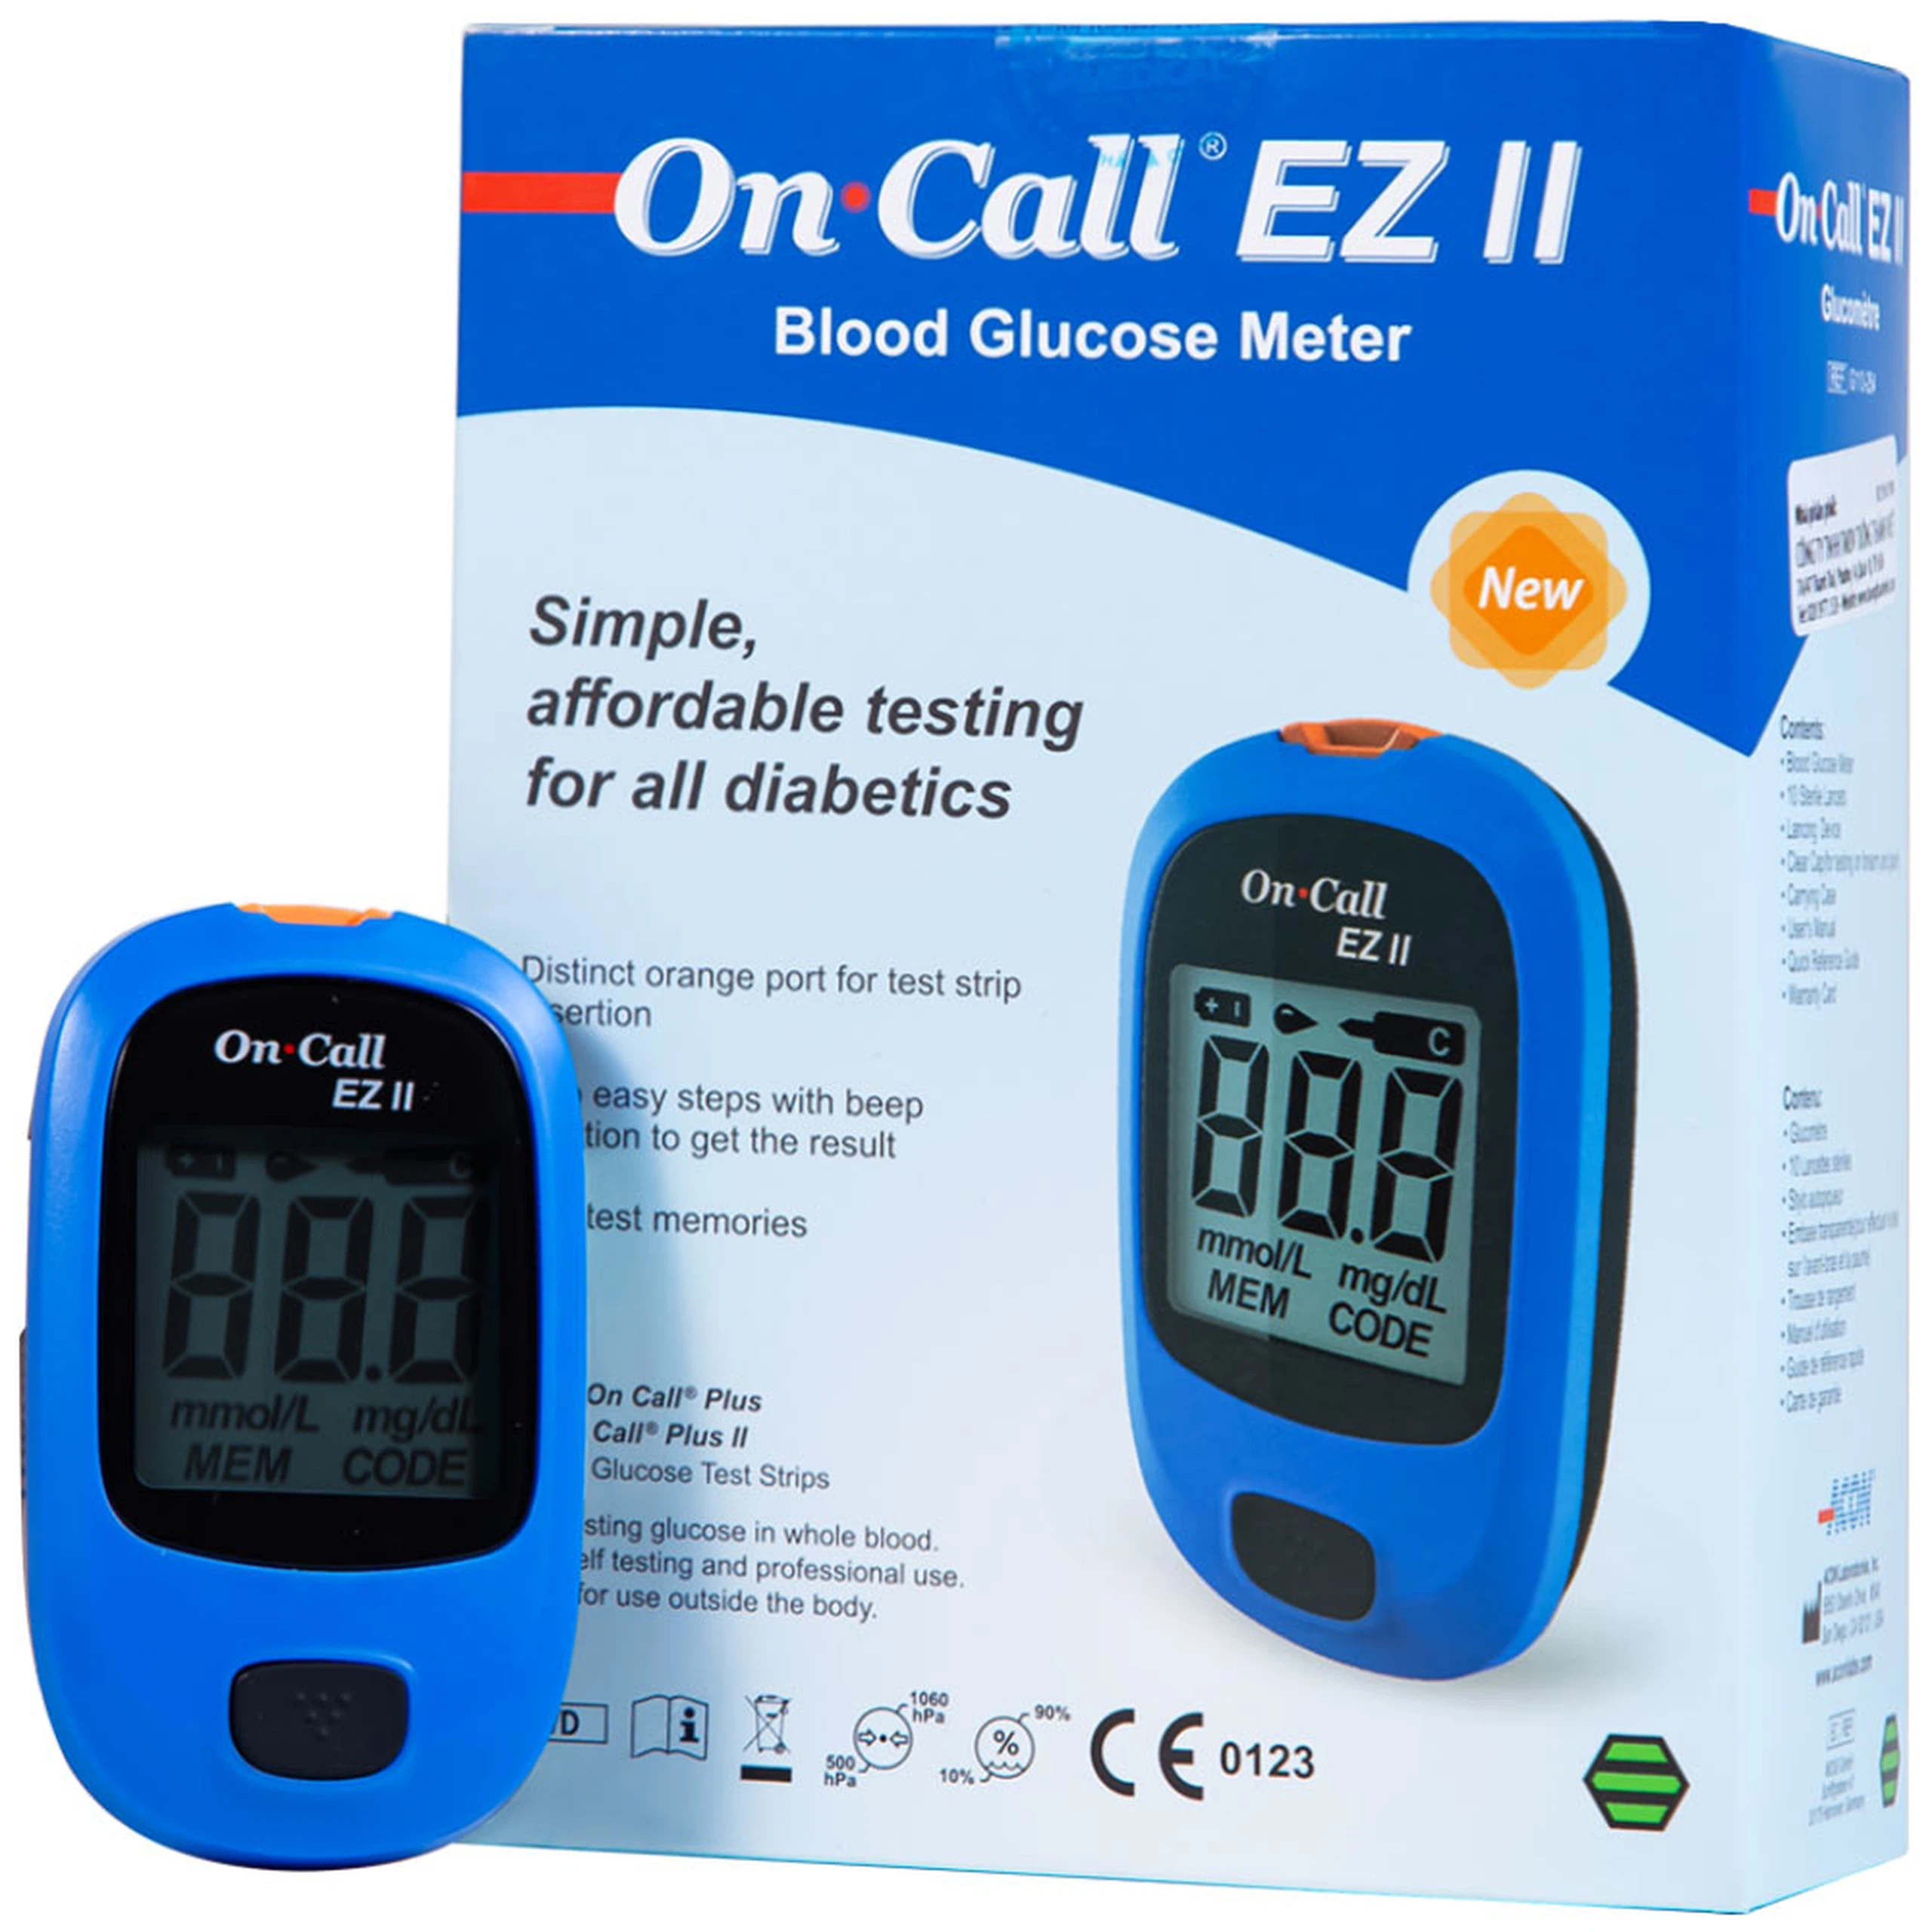 Máy đo đường huyết On Call Ez II ACON thiết kế gọn nhẹ, thao tác sử dụng đơn giản